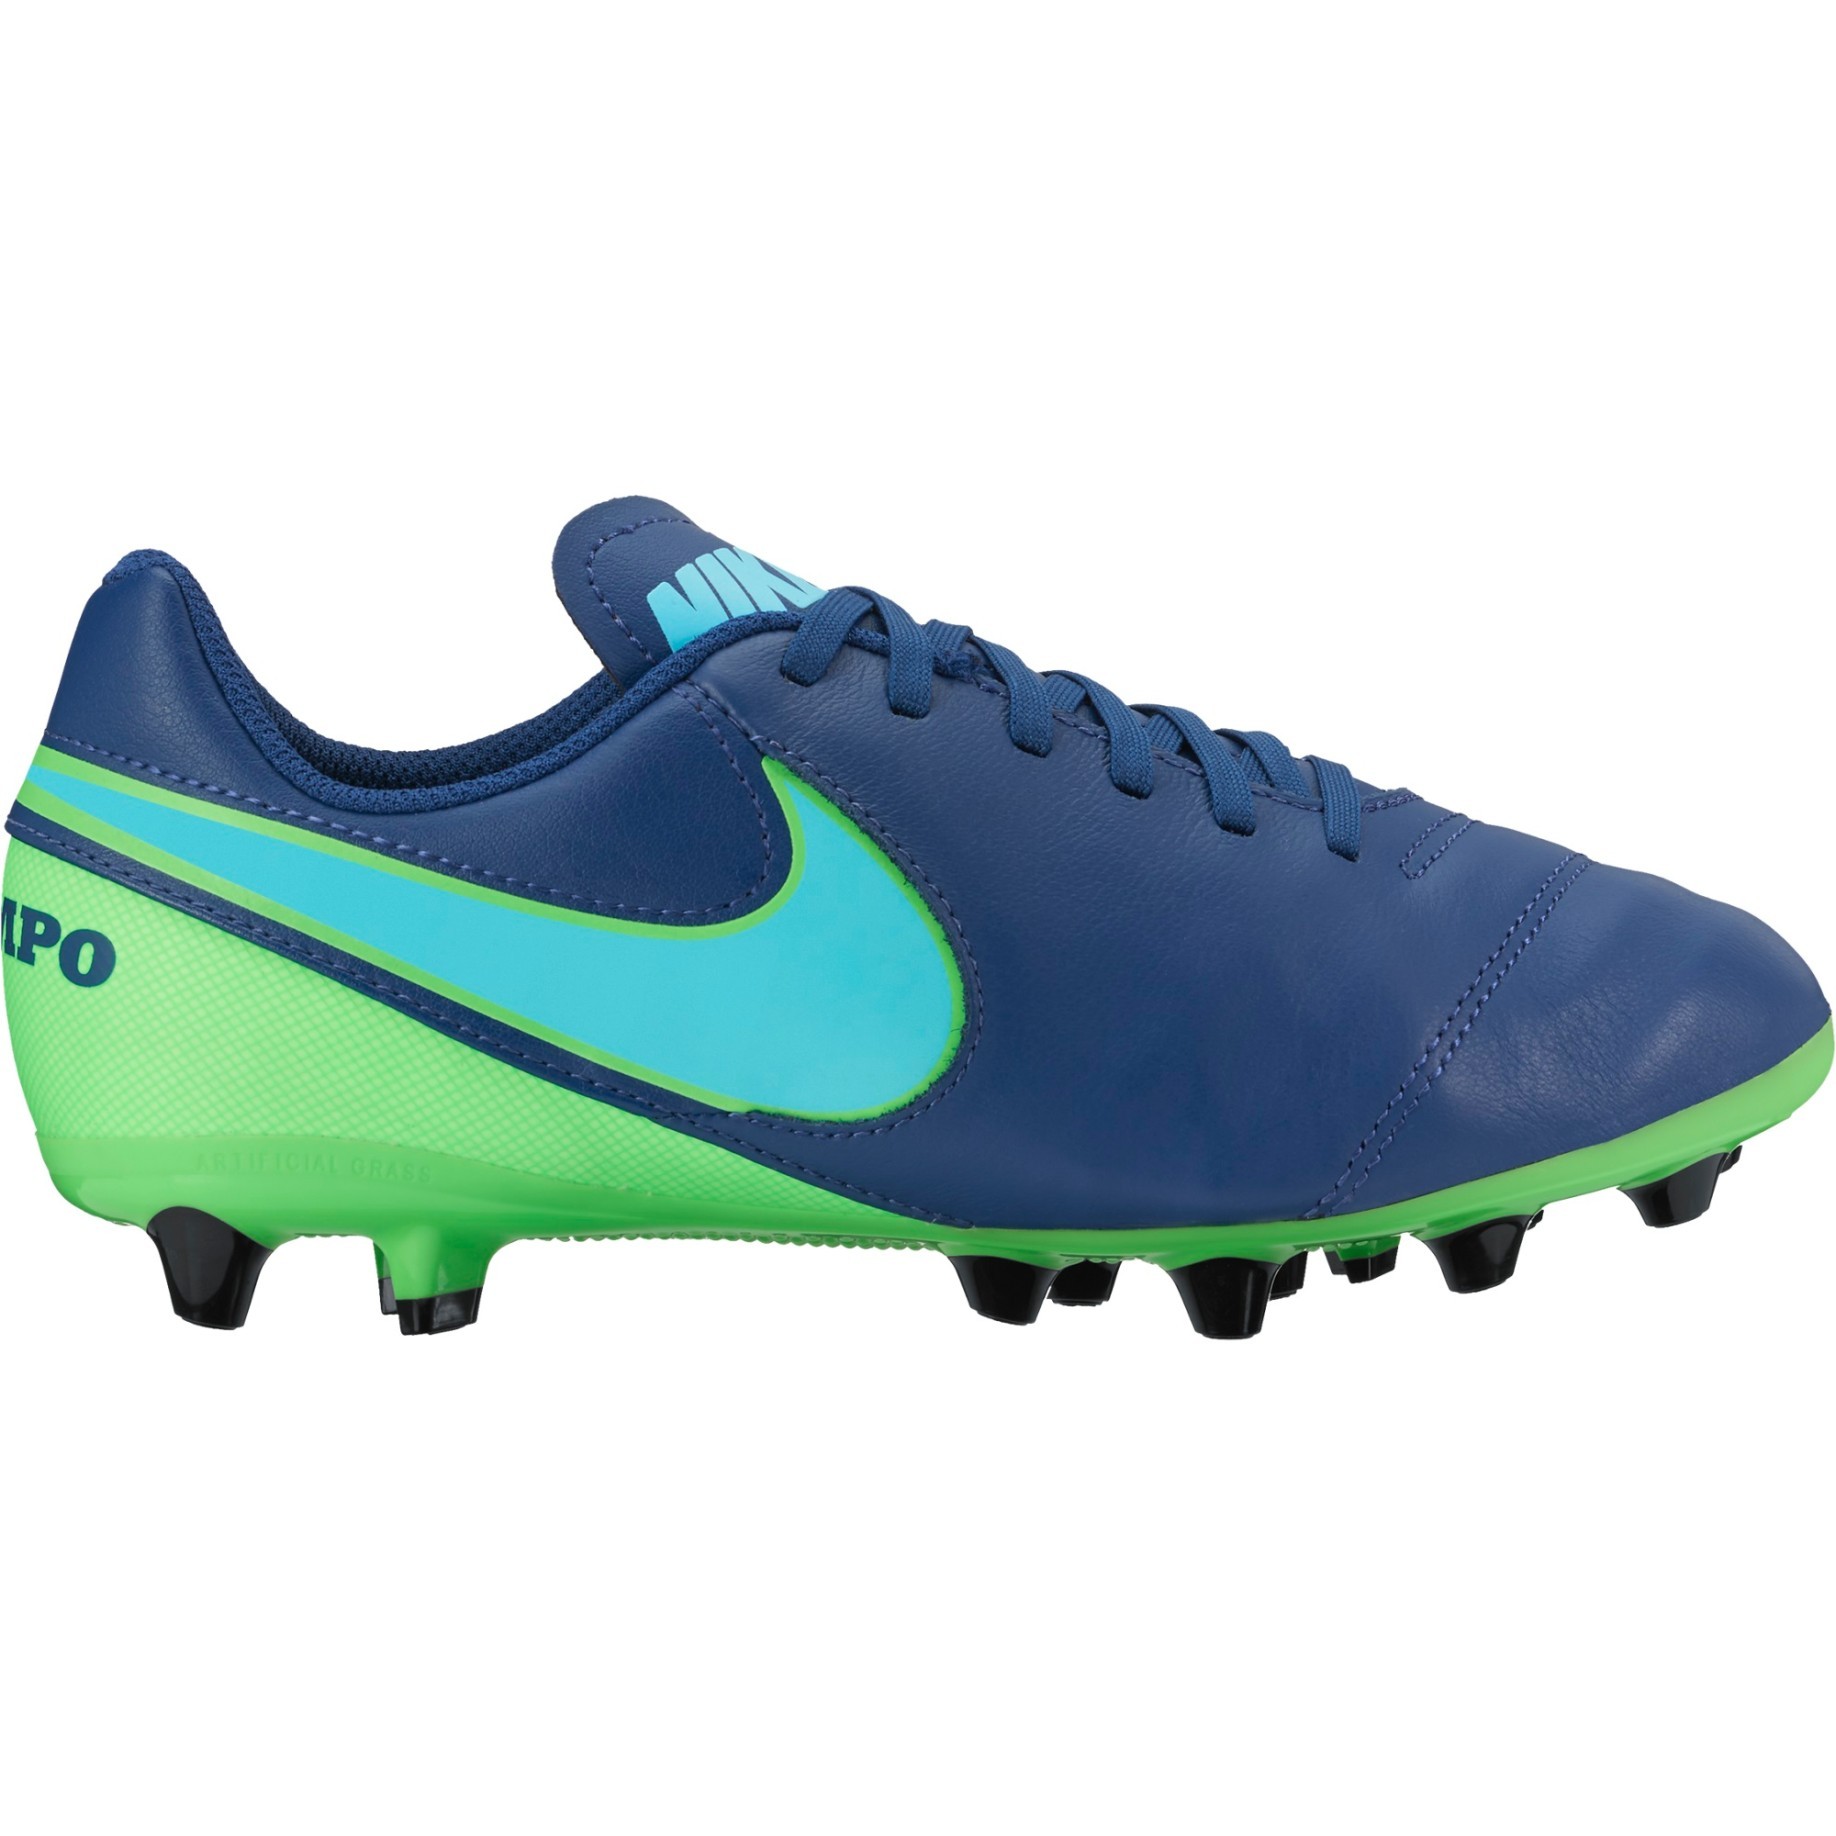 Niños botas de Nike Tiempo Legend VI AG-Pro colore azul azul - Nike - SportIT.com